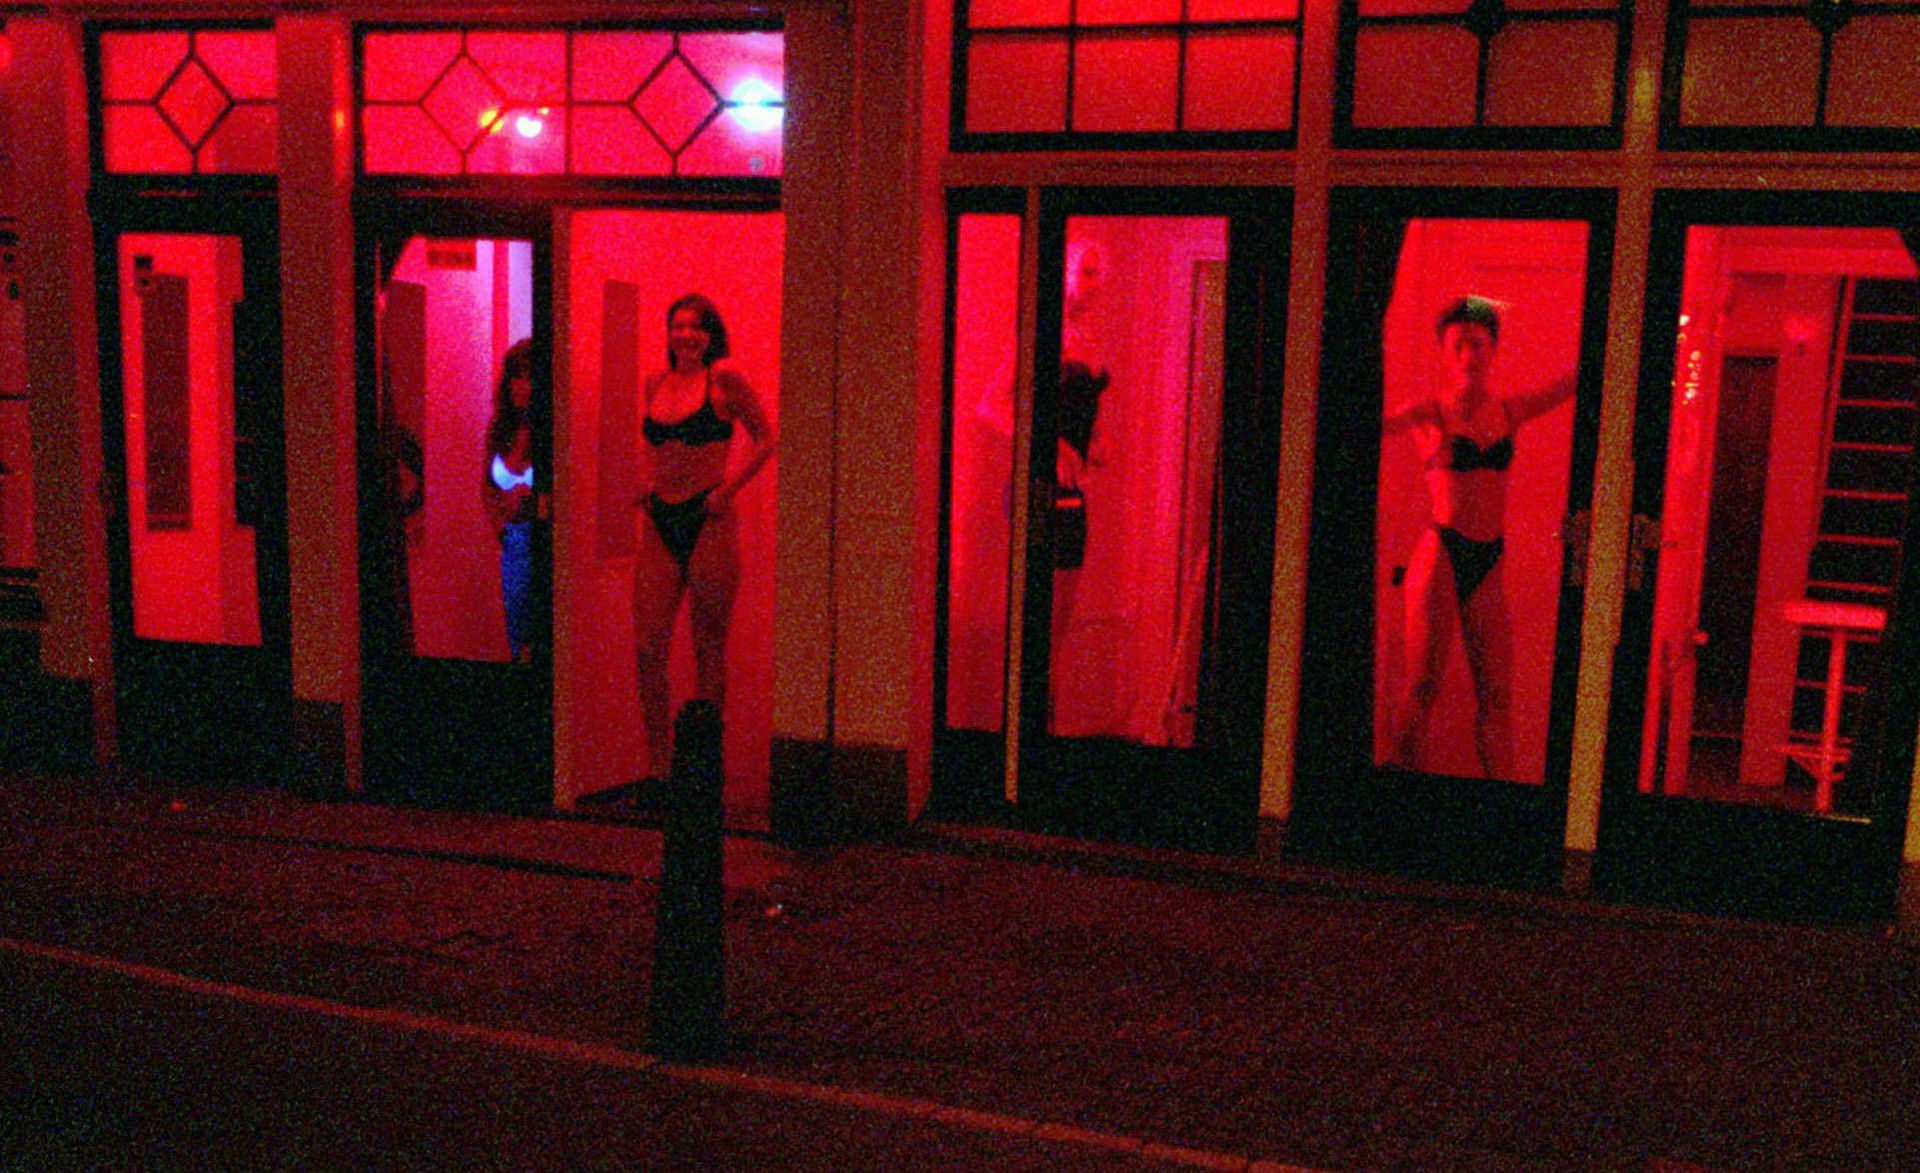  Magenta (IT) prostitutes